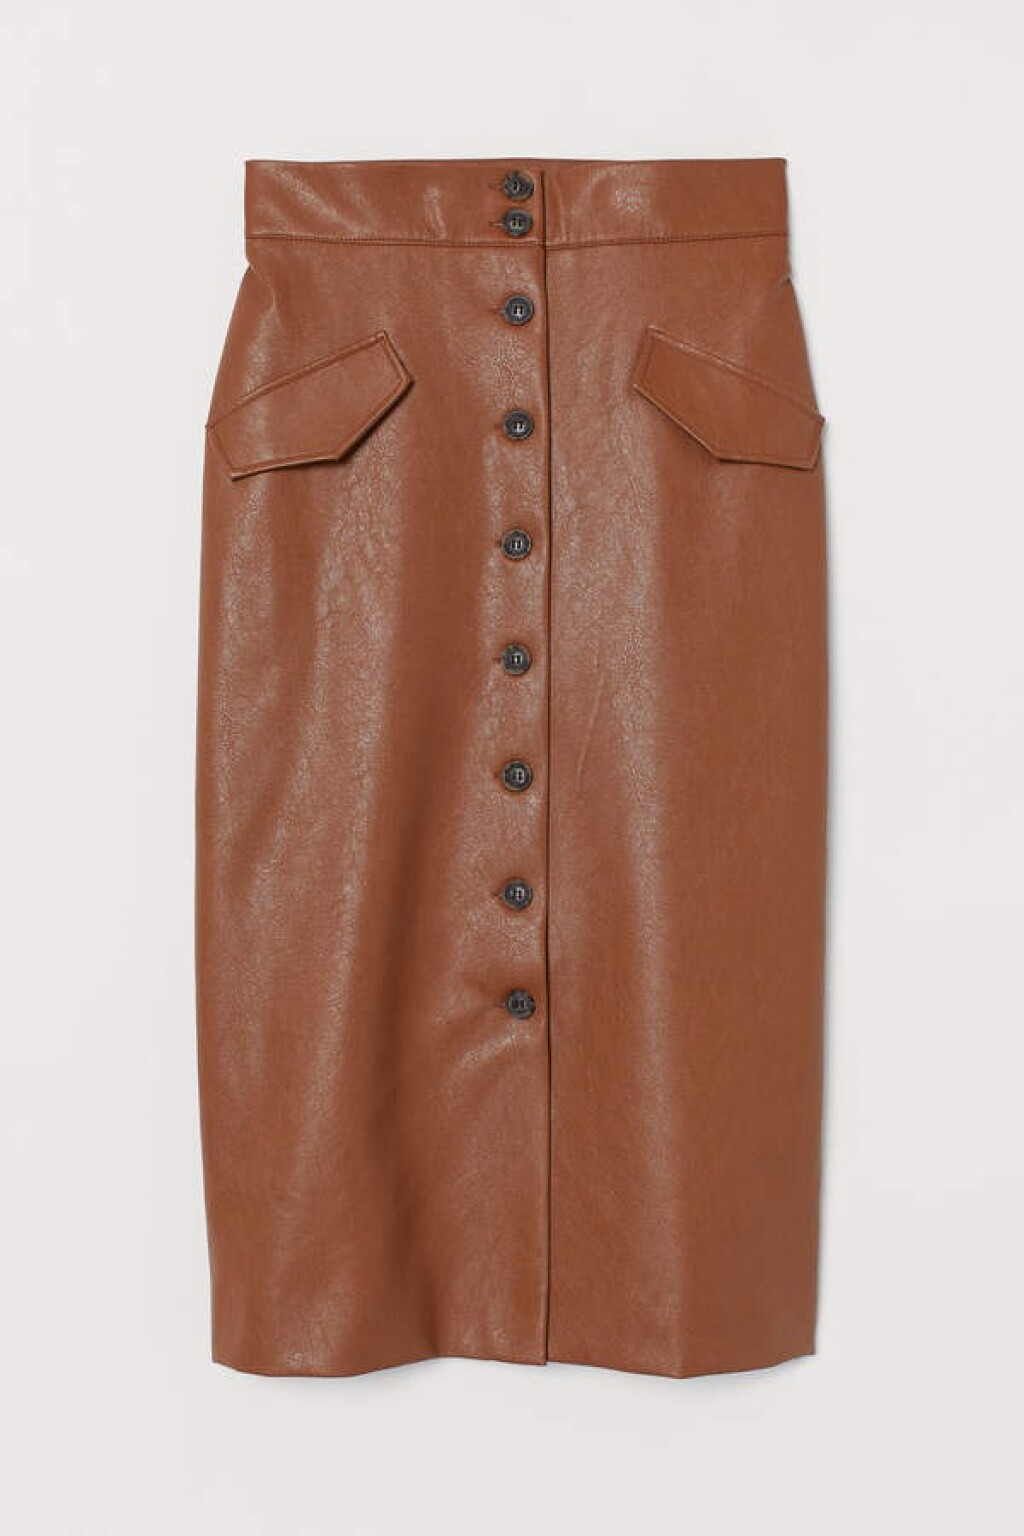 H&M suknja od umjetne kože u boji konjaka više nije u prodaji